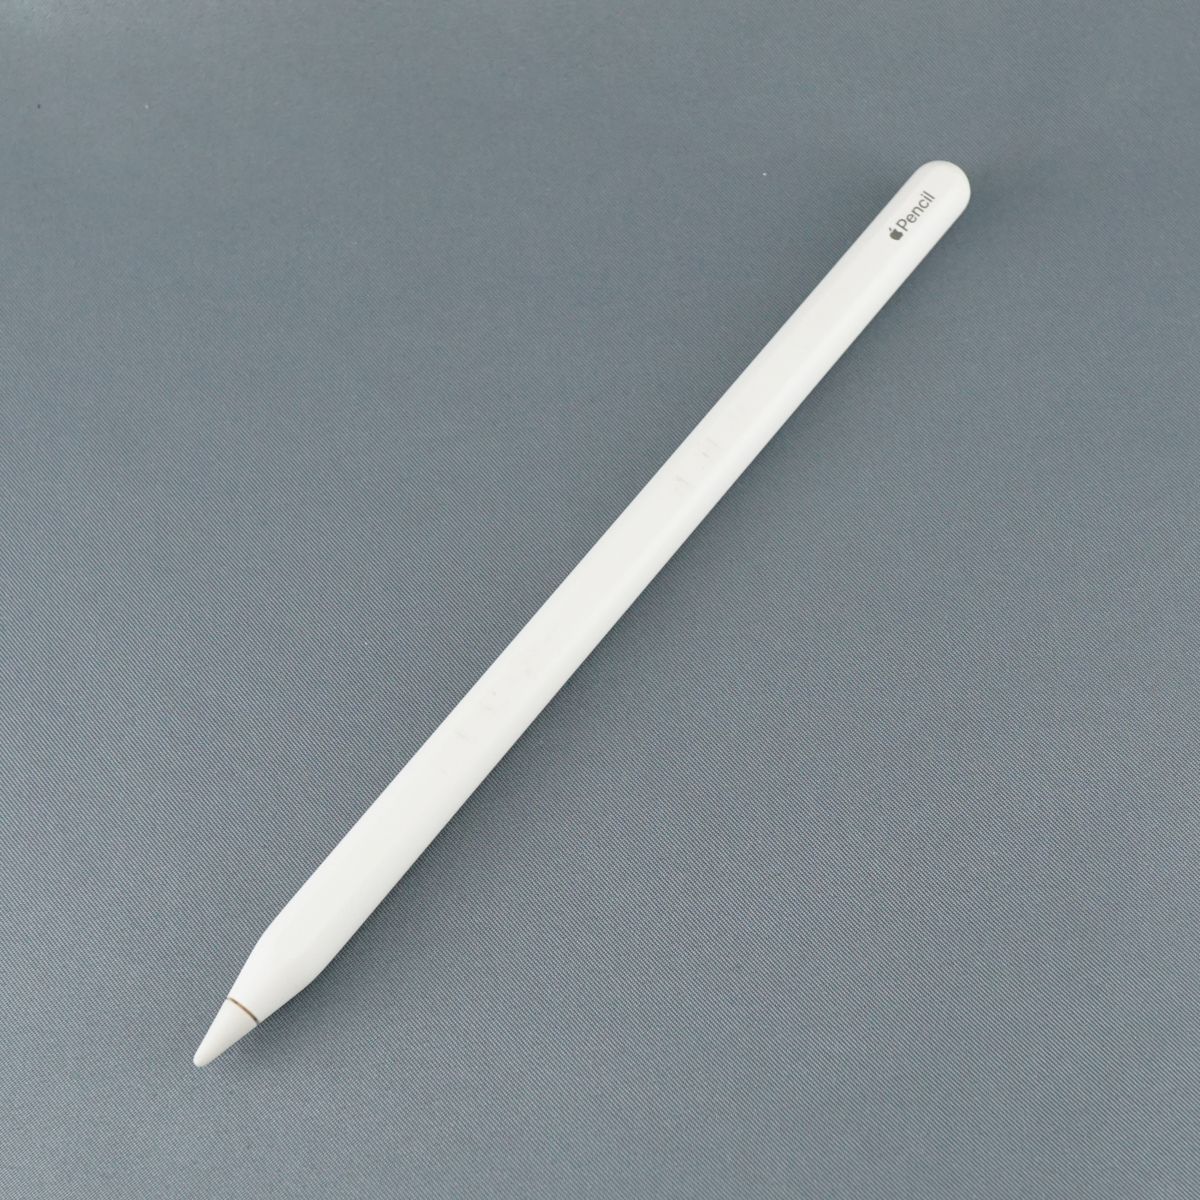 Apple Pencil 第2世代 ペン先曲がり(正常に動作) - PC周辺機器